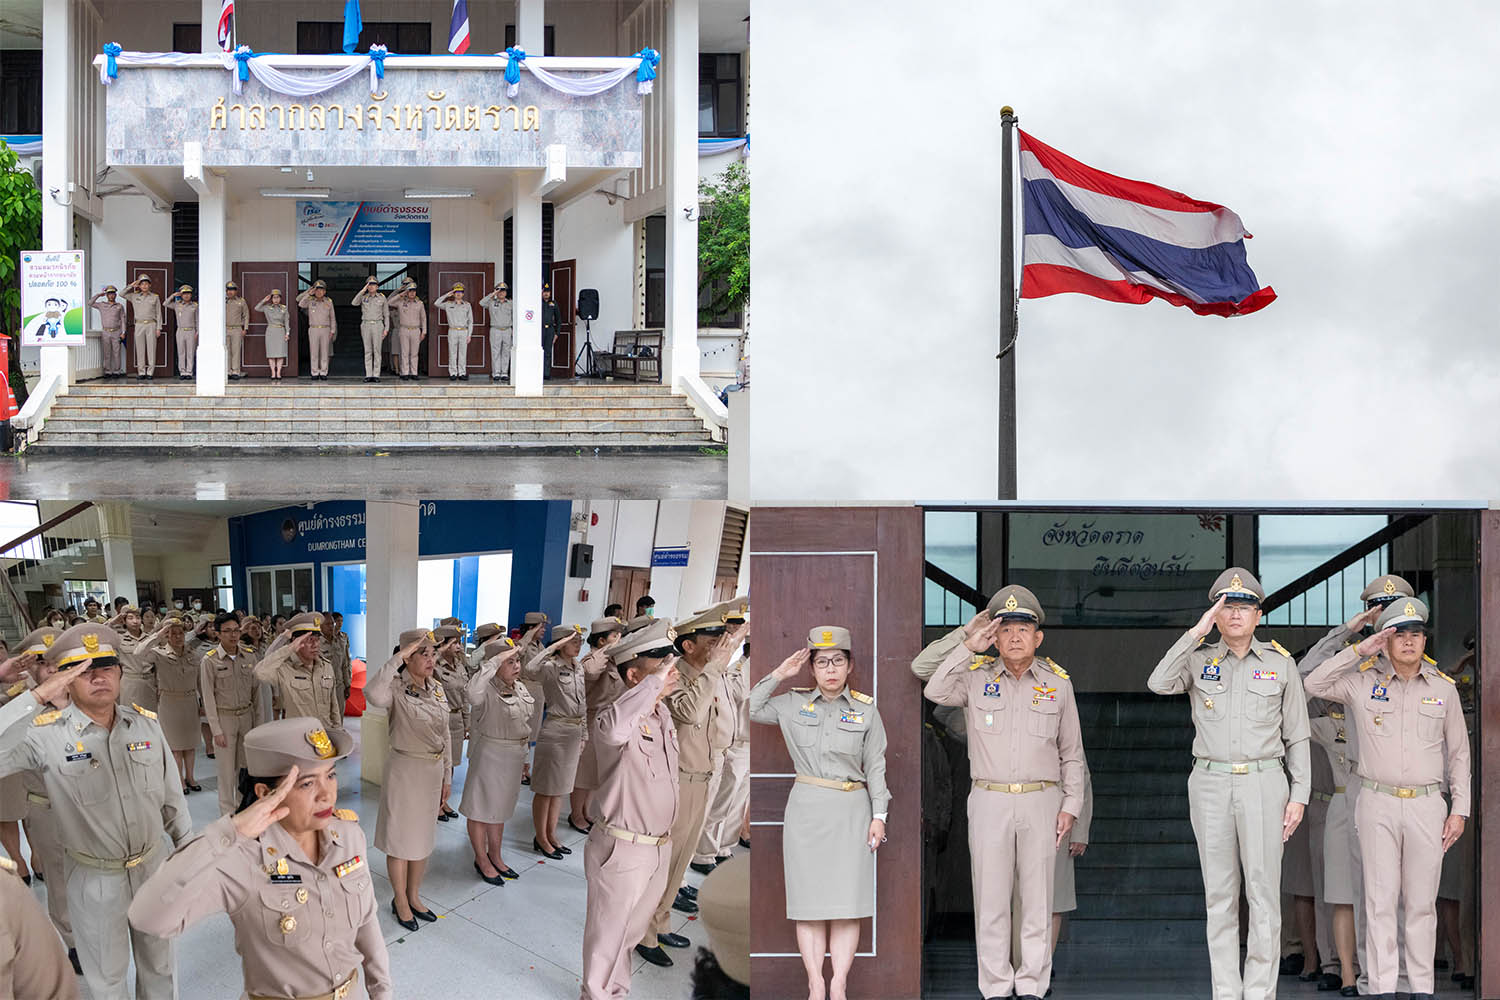 จังหวัดตราด นำหัวหน้าส่วนราชการข้าราชการ เคารพธงชาติ เนื่องในวันพระราชทานธงชาติไทย